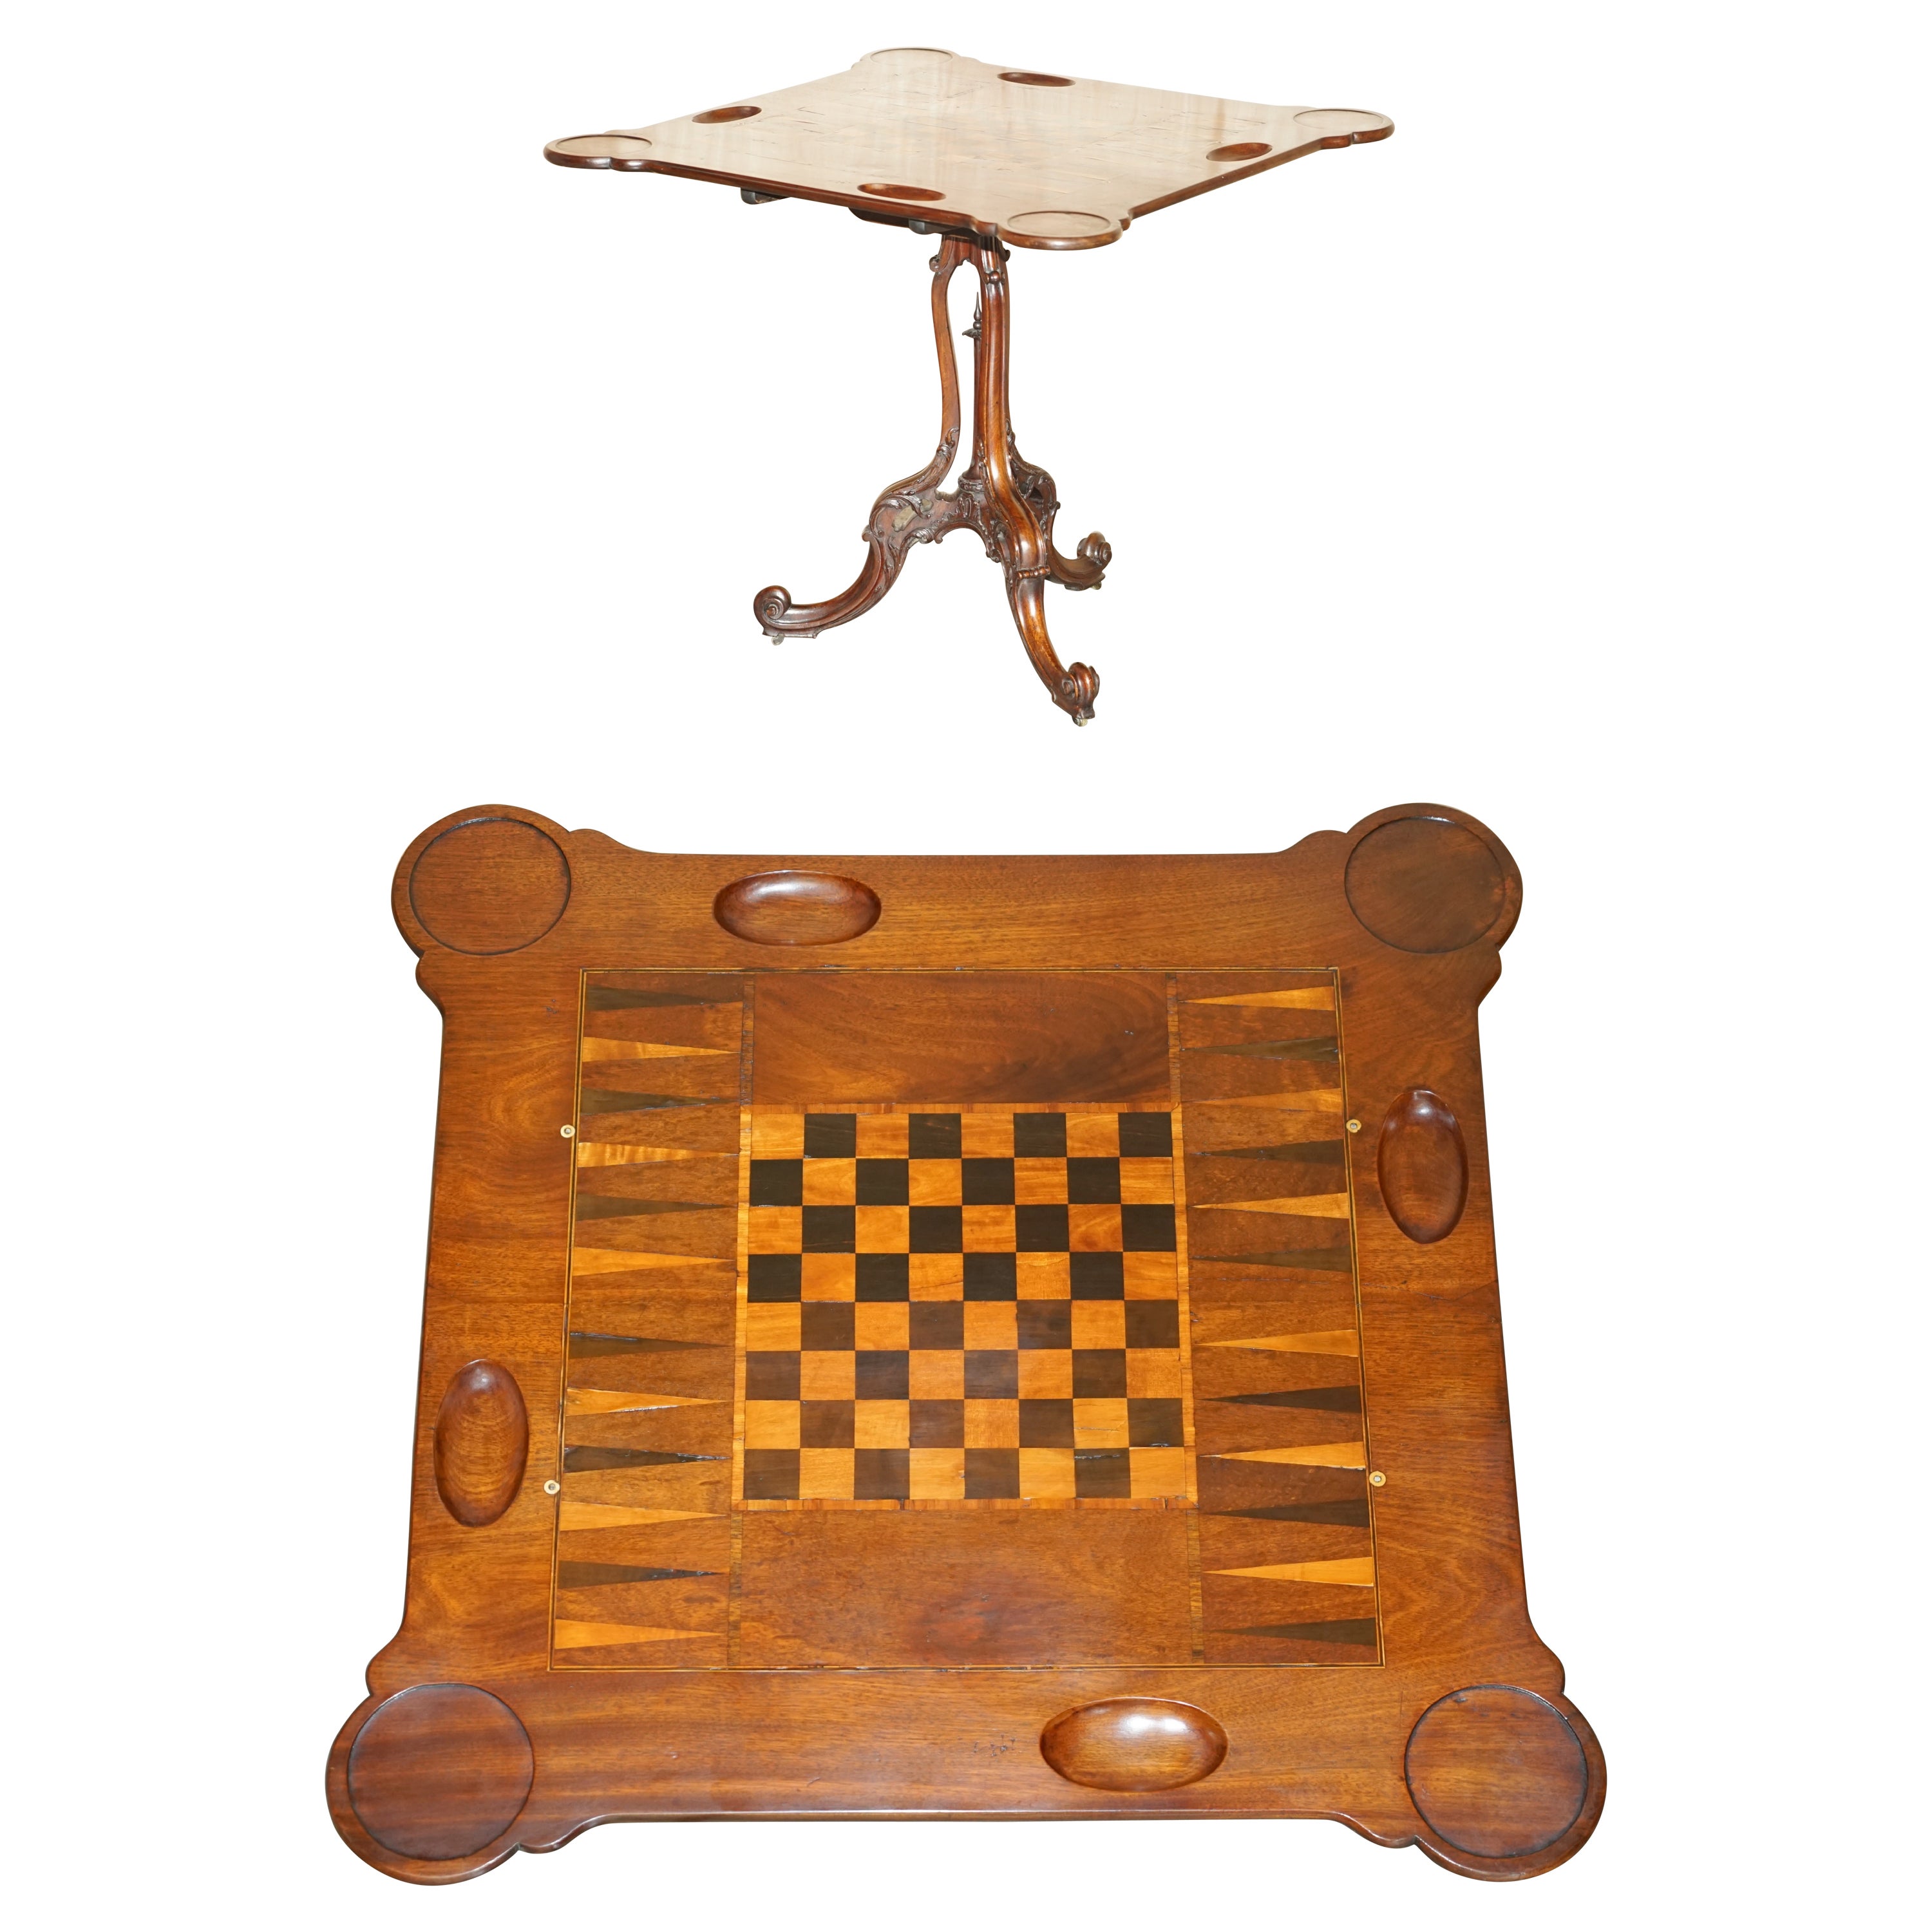 Restaurierte viktorianische 1880 Gratnussbaum Tilt Top Schachbrett Backgammon Spiele Tisch